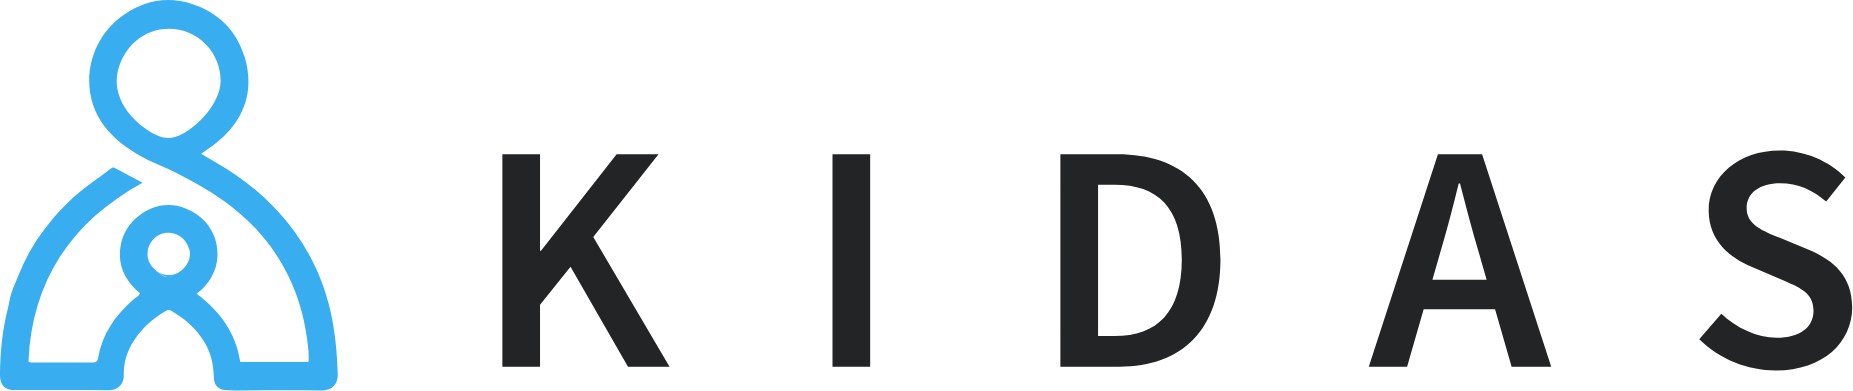 kidas logo